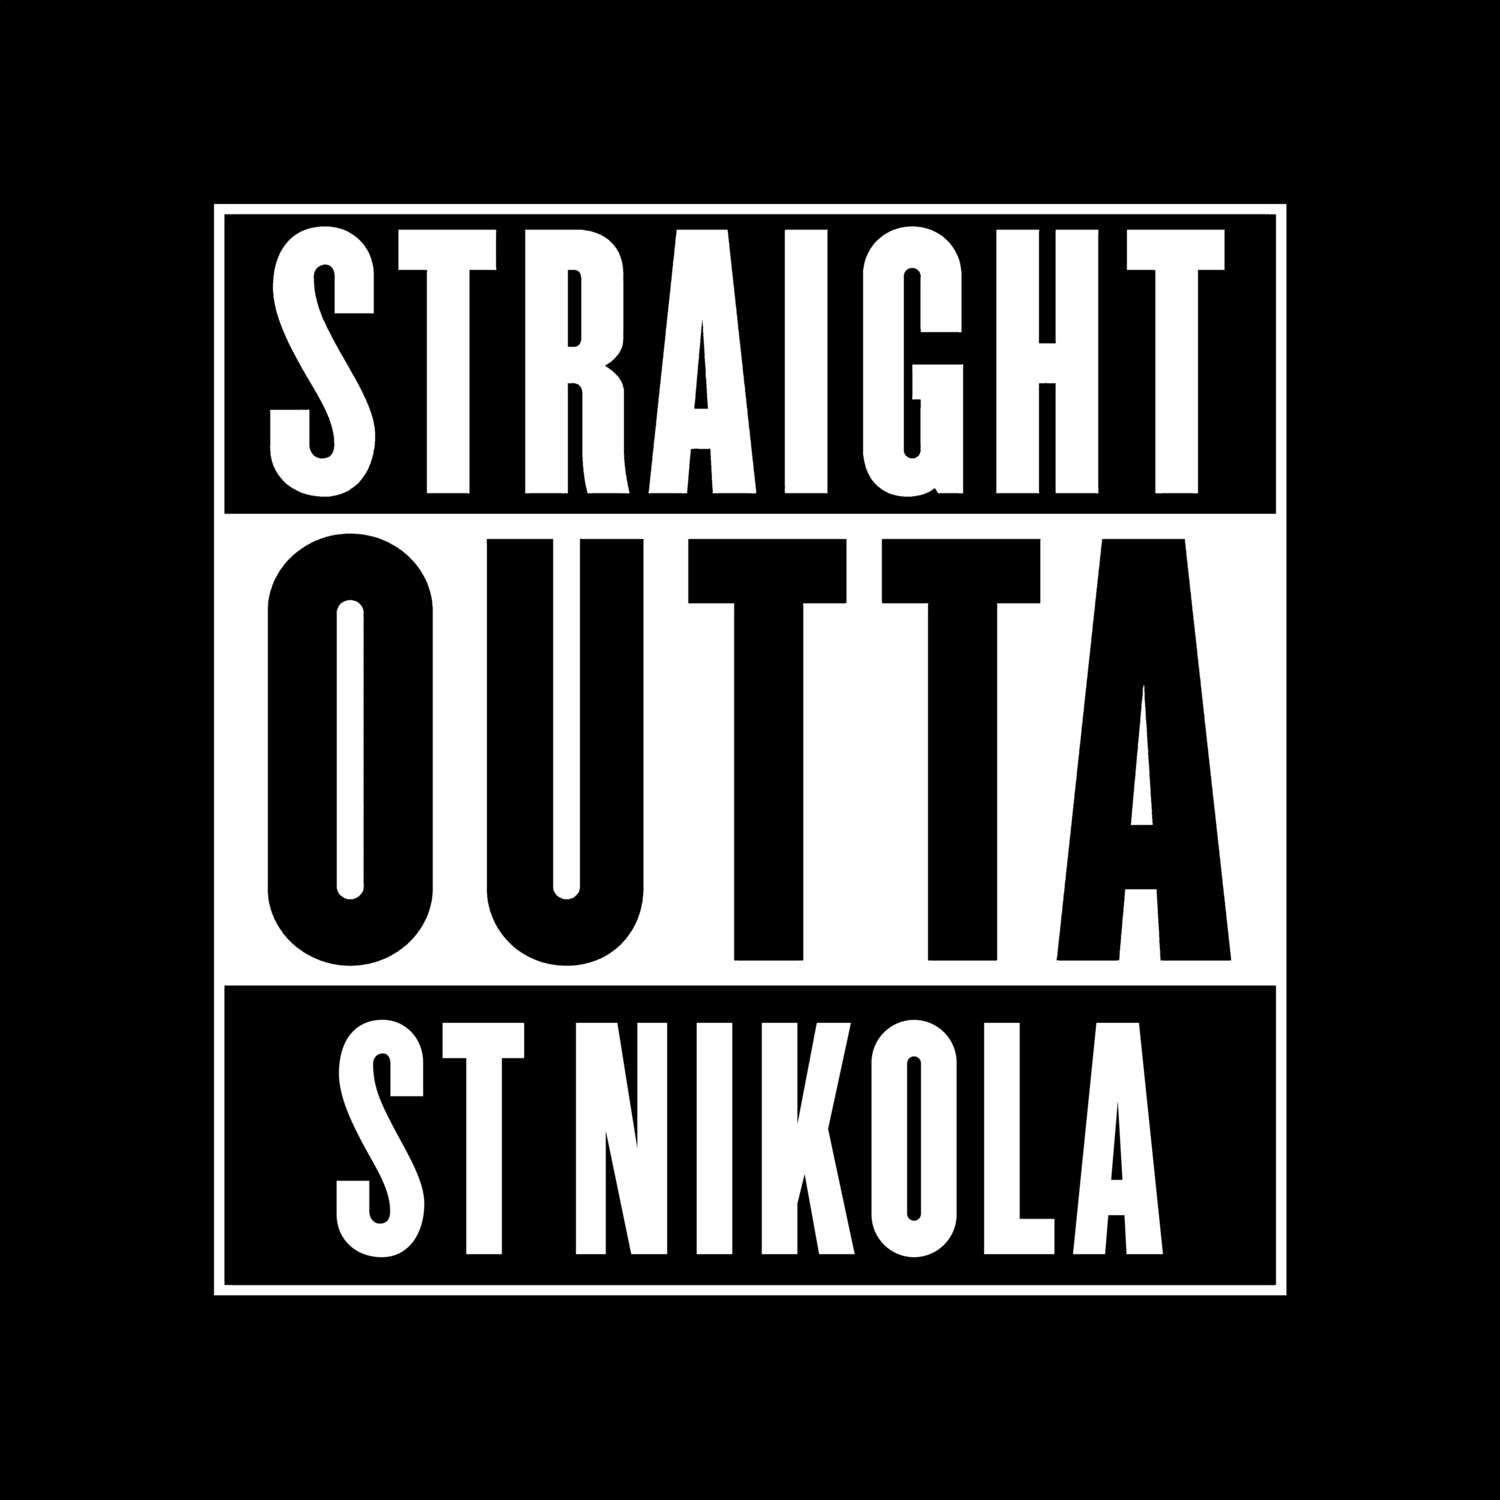 St Nikola T-Shirt »Straight Outta«